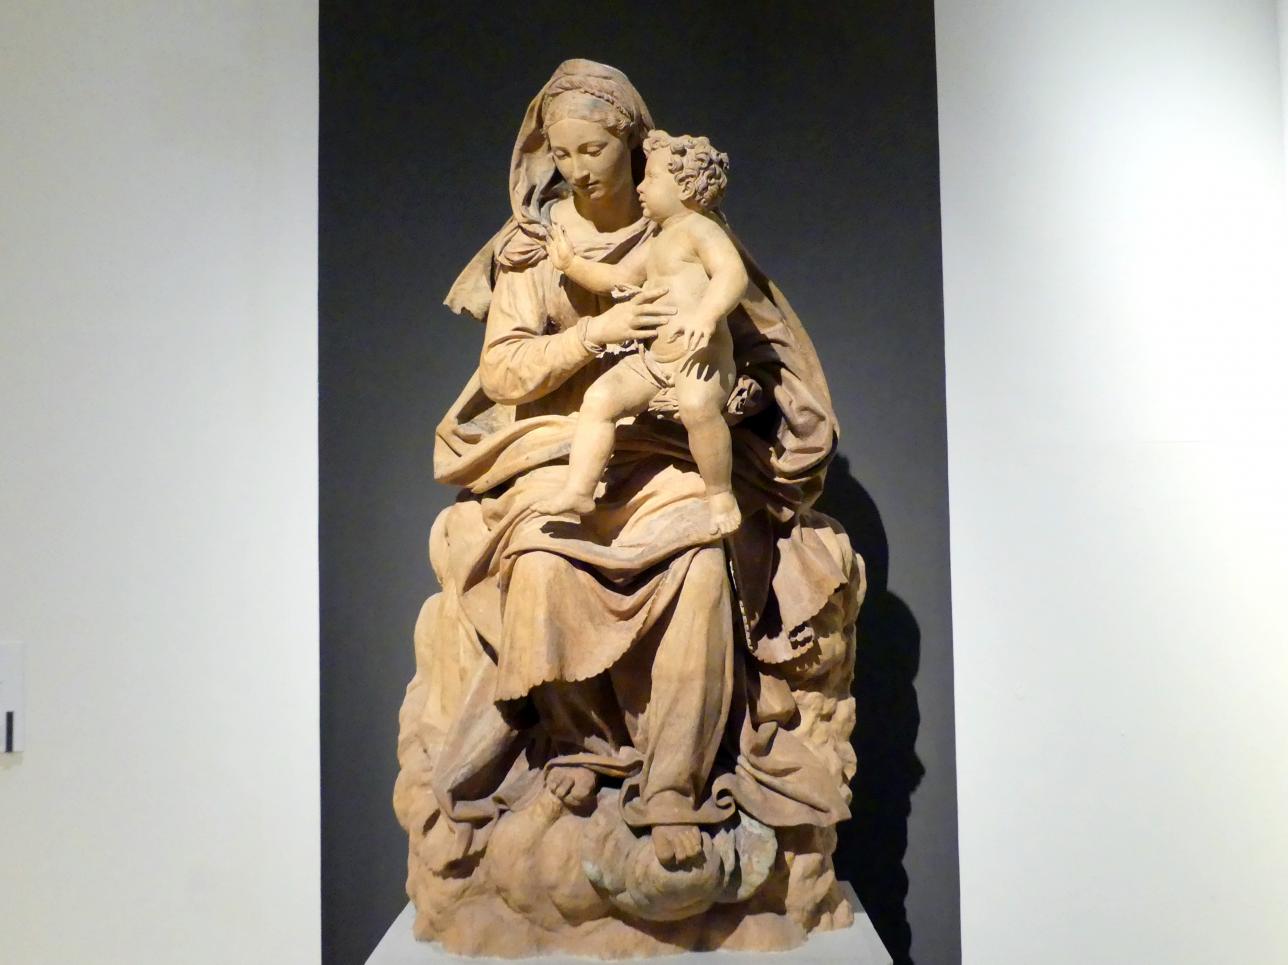 Antonio Begarelli (1529–1540), Maria mit Kind, Modena, Chiesa San Salvatore (am 13. Mai 1944 zerstört), jetzt Modena, Galleria Estense, Saal 11, um 1540, Bild 1/5